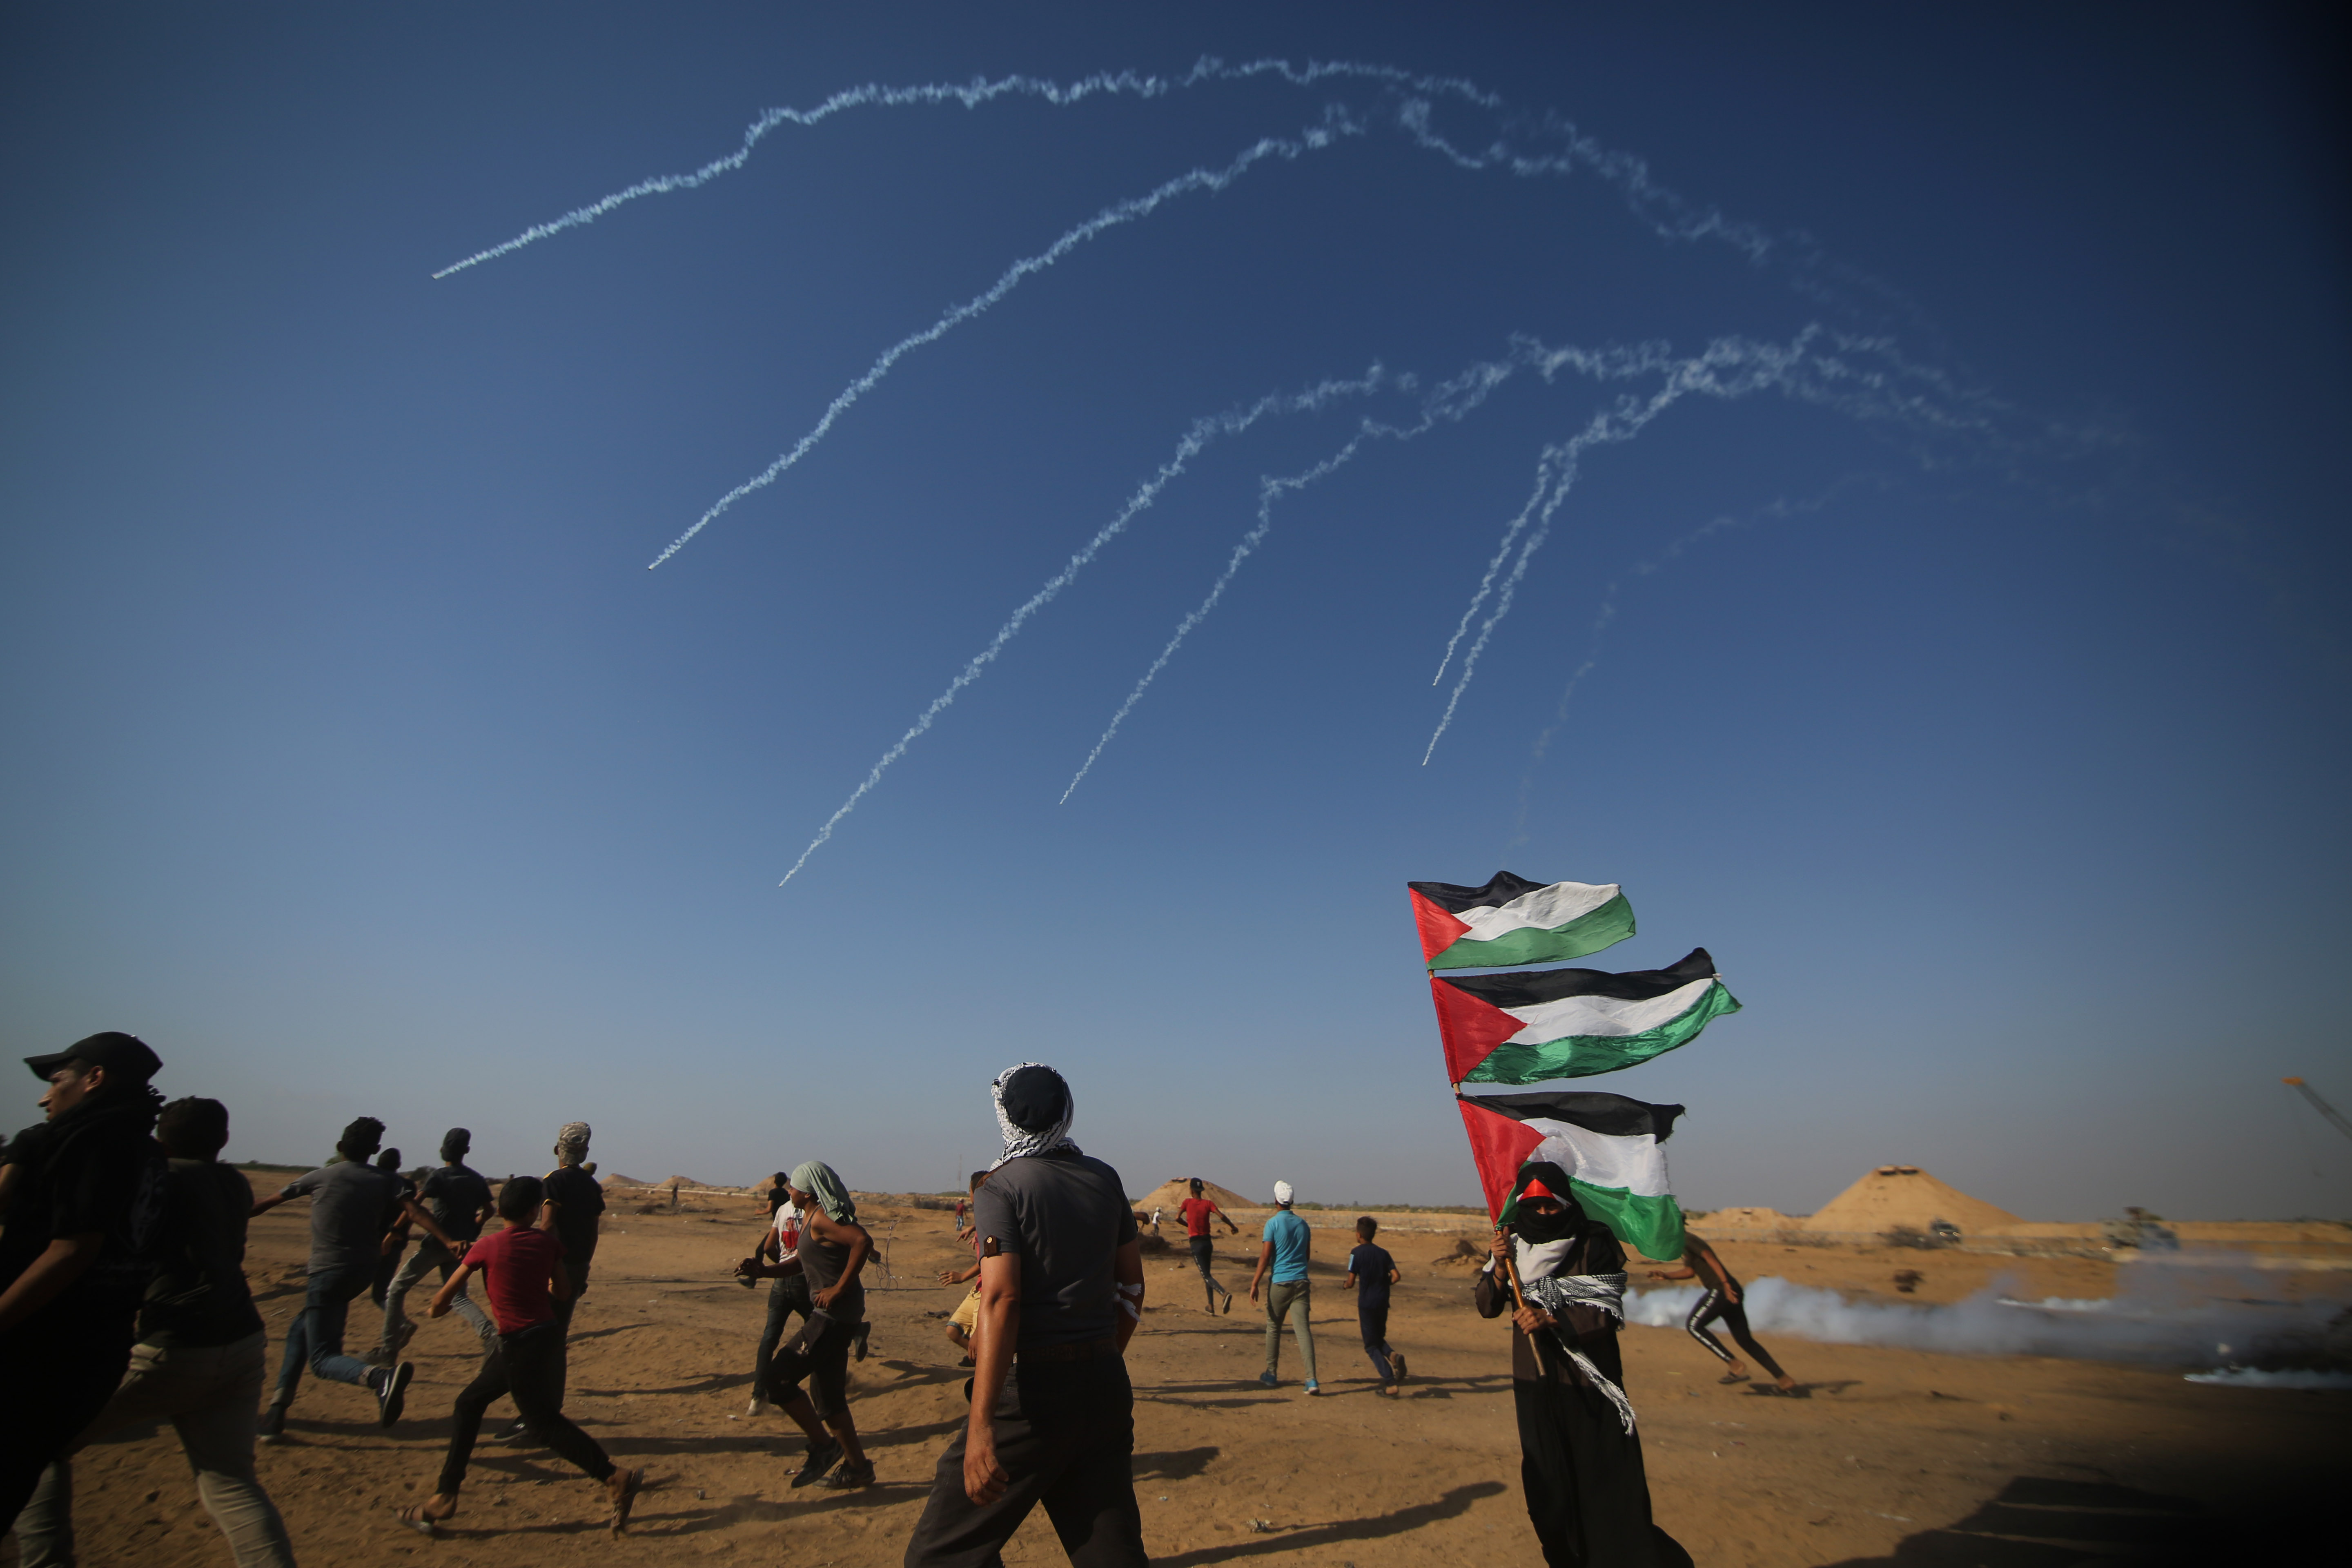 地带与以色列交界地区,巴勒斯坦示威者躲避以色列士兵发射的催泪弹